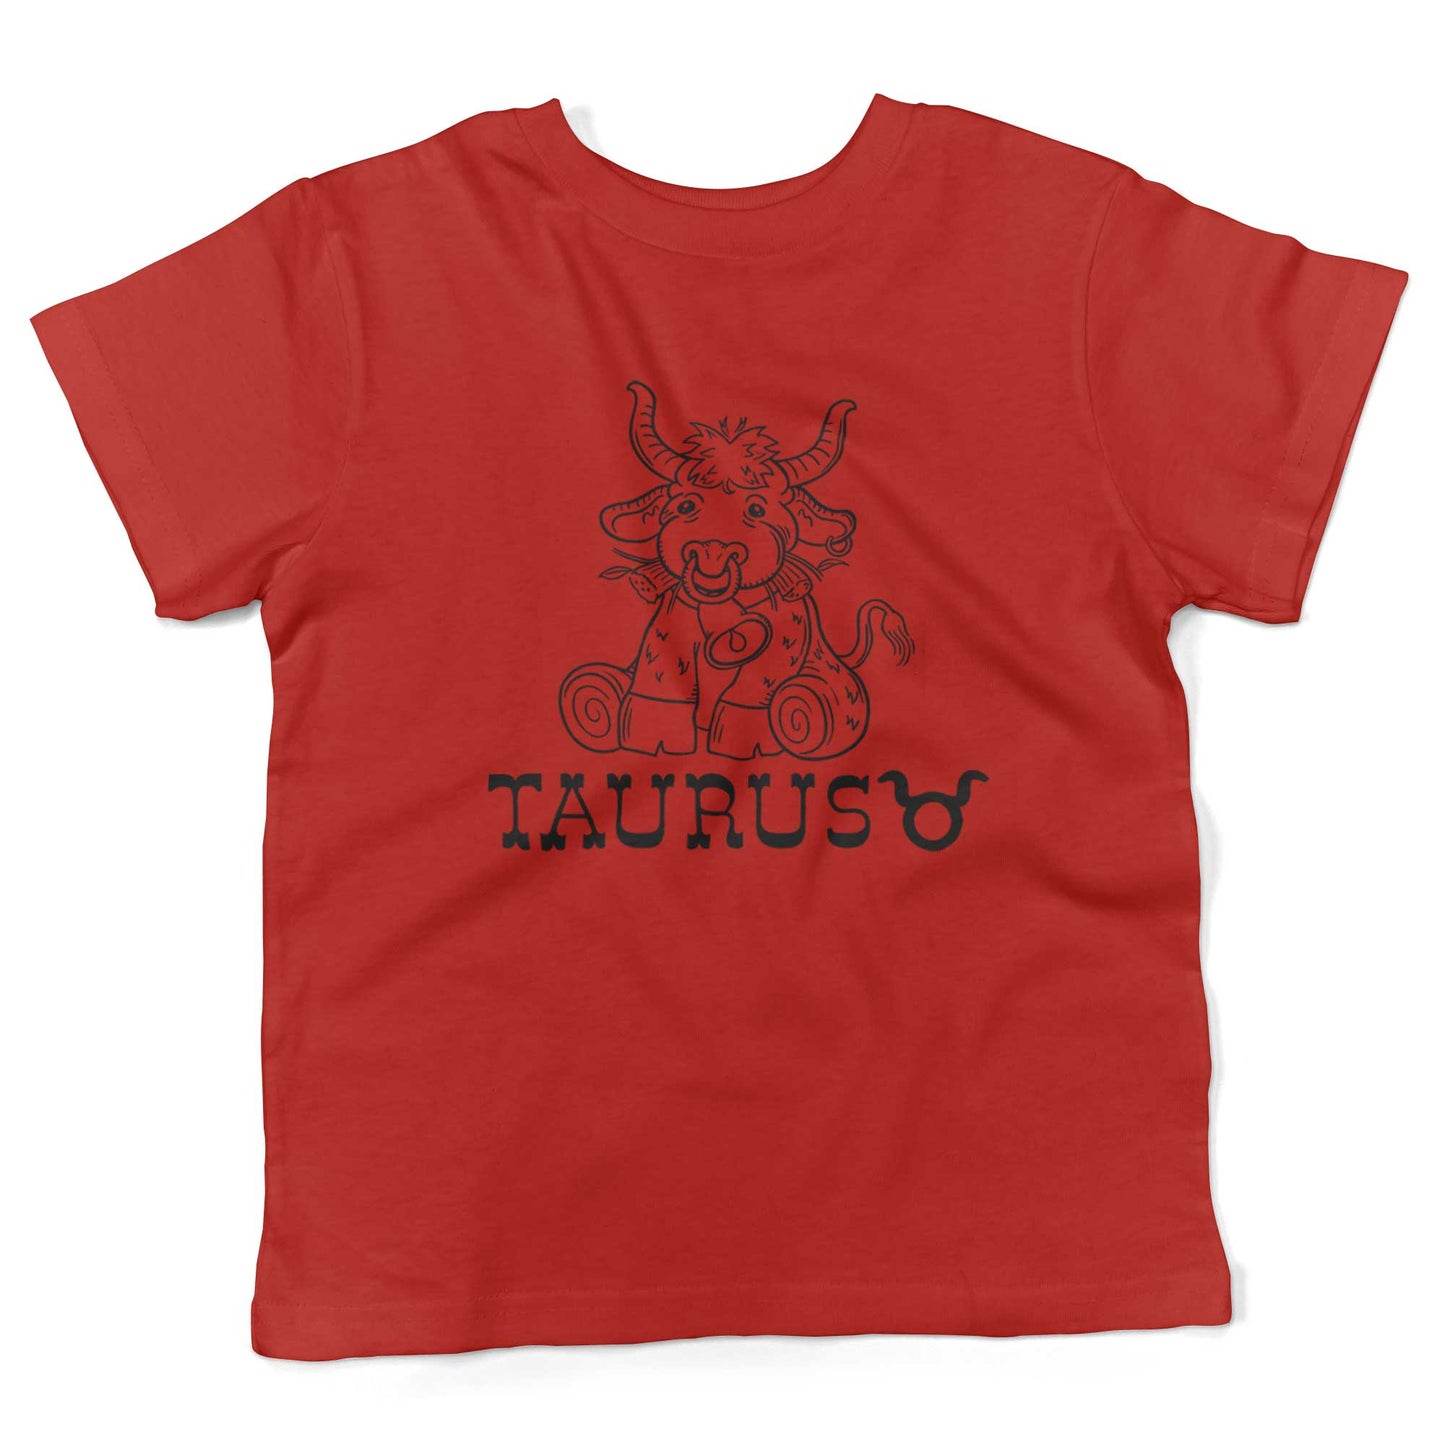 Taurus Cotton Toddler Shirt